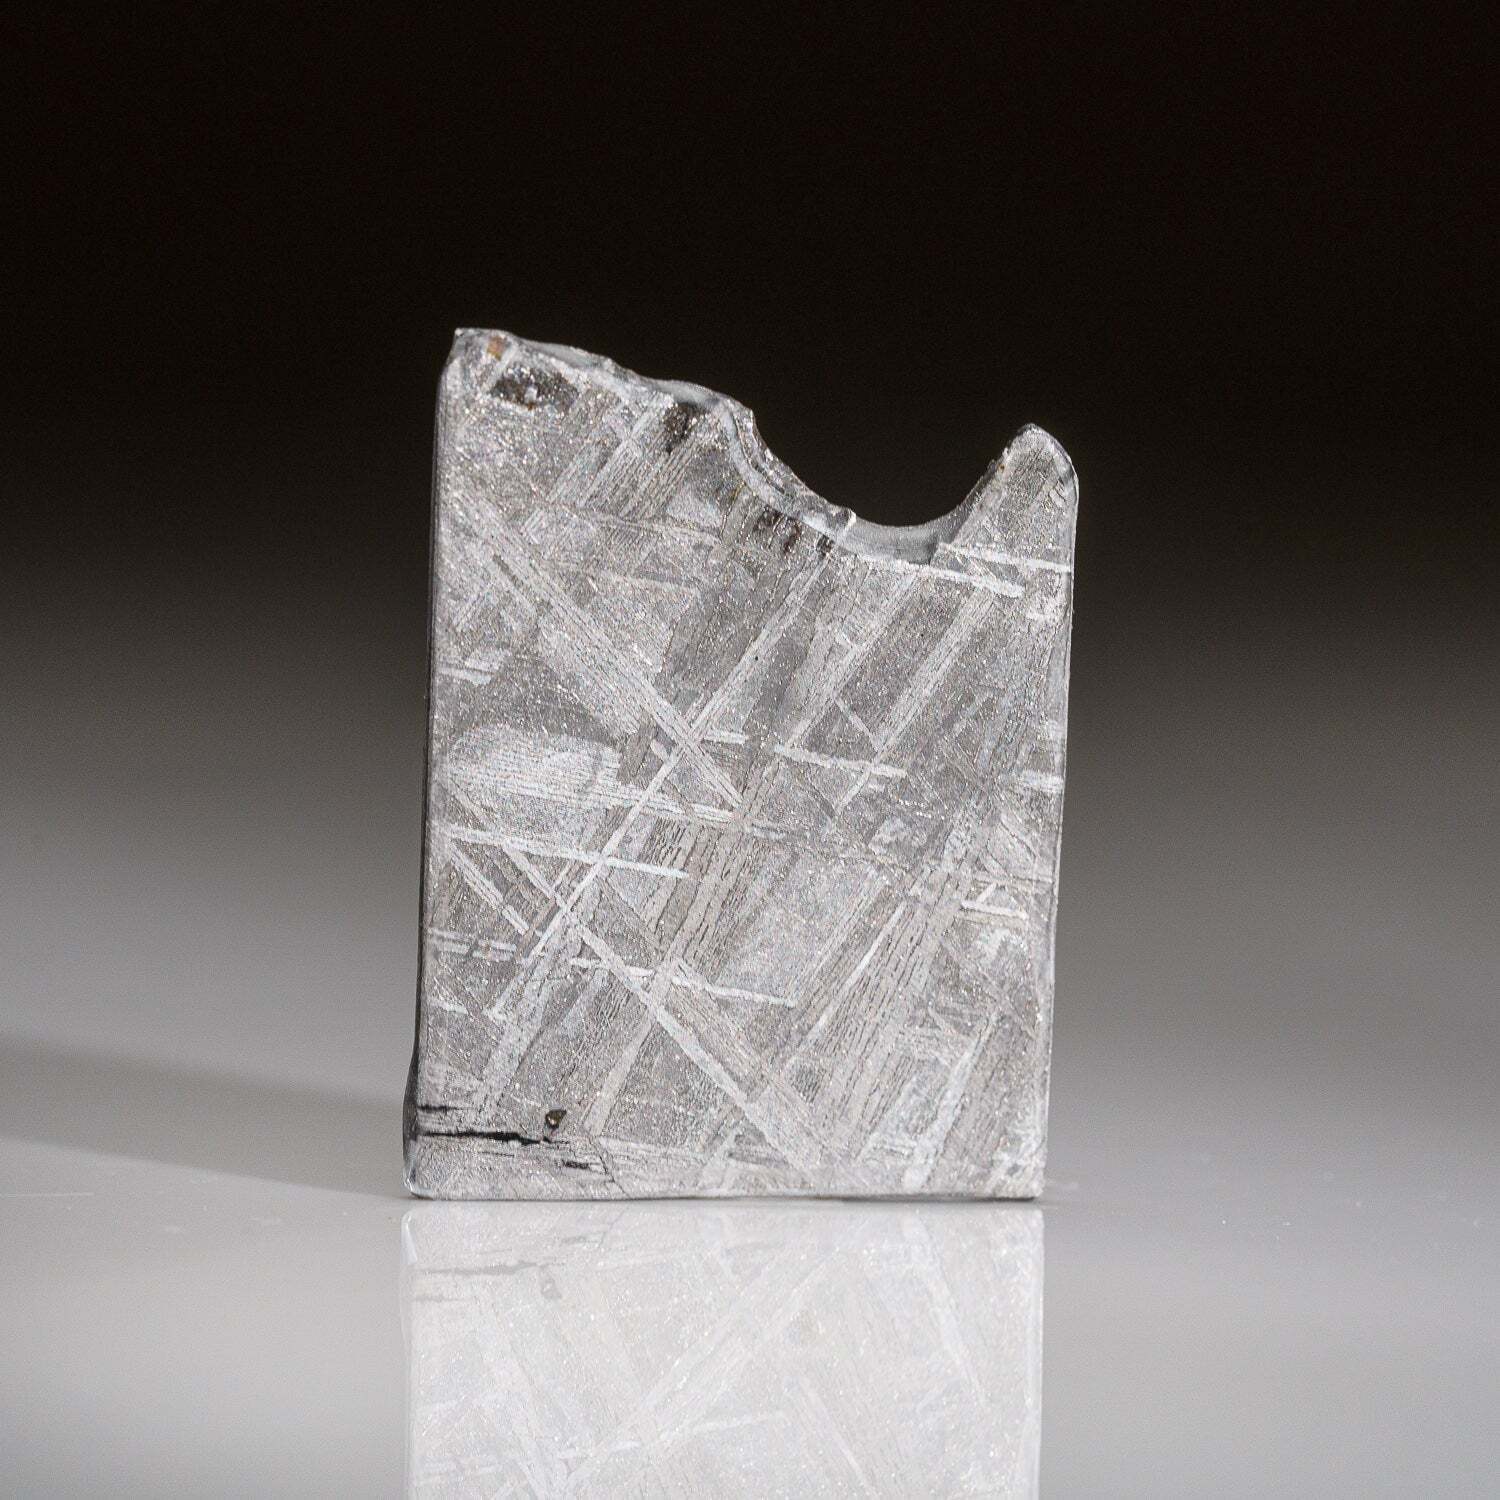 Genuine Muonionalusta Meteorite Slice (7.5 grams)